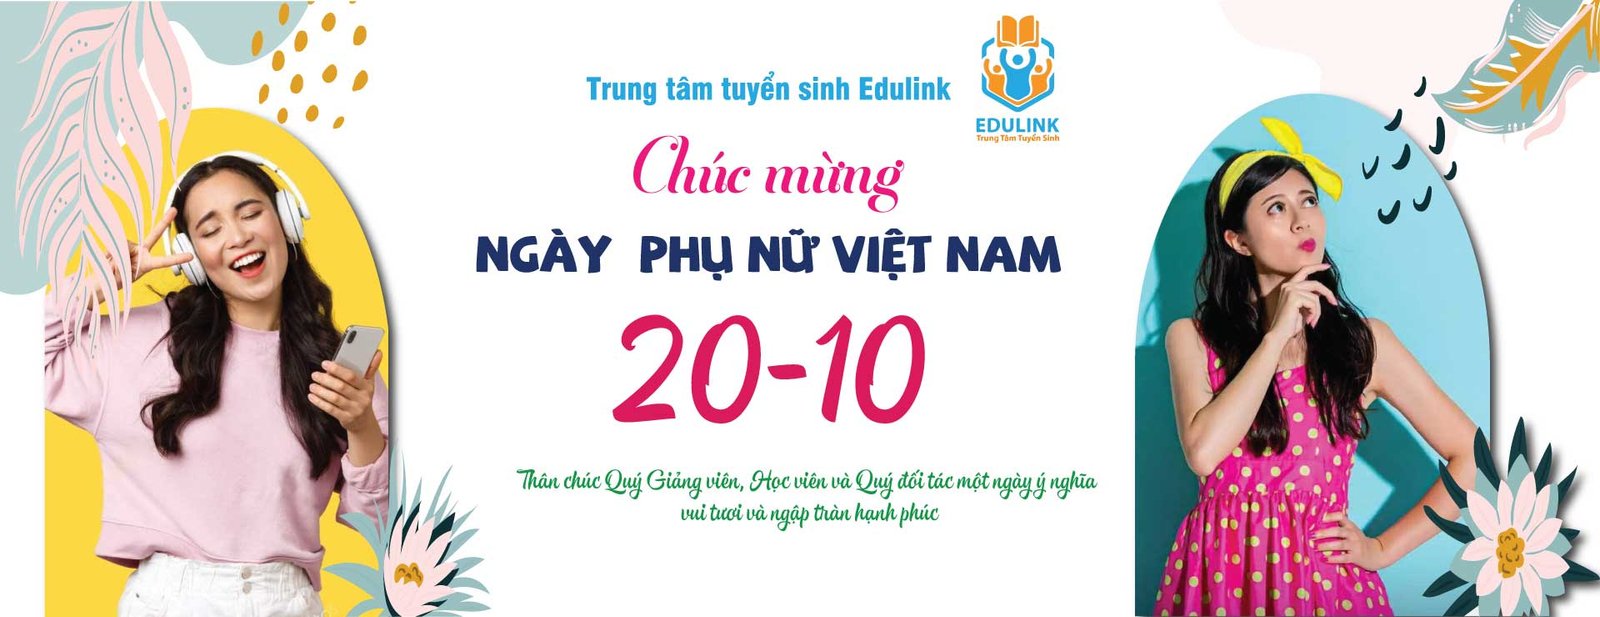 EduLink chúc mừng ngày Phụ nữ Việt Nam 20/10